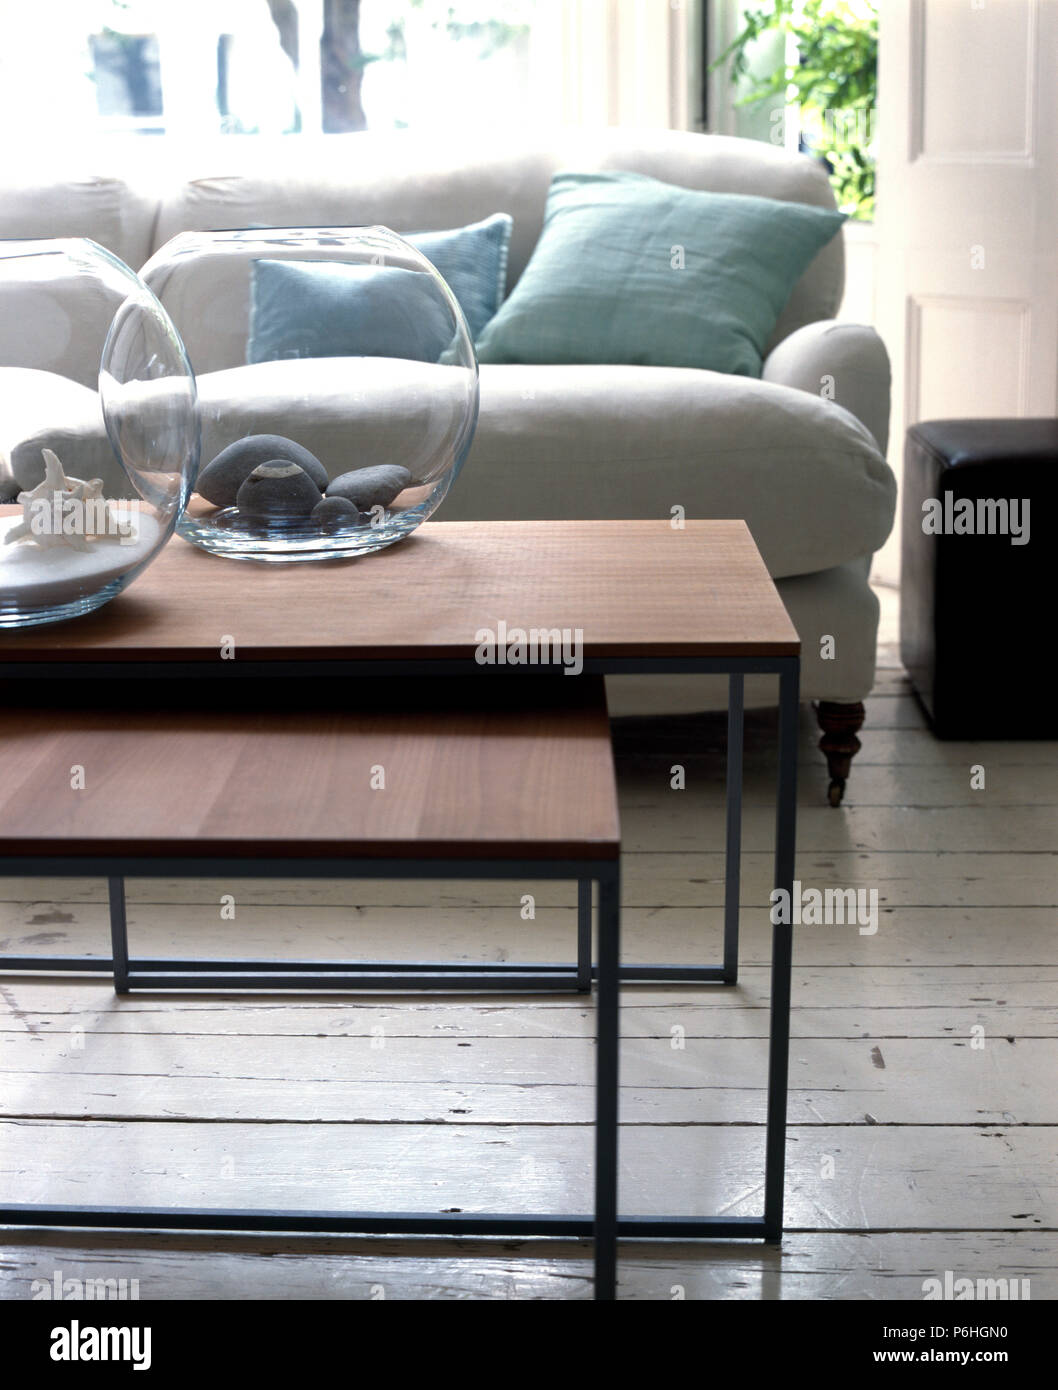 Circolare di ciotole in vetro sul set del moderno metallo e legno impiallacciato con nido di tabelle in un urbano salotto con un divano bianco Foto Stock